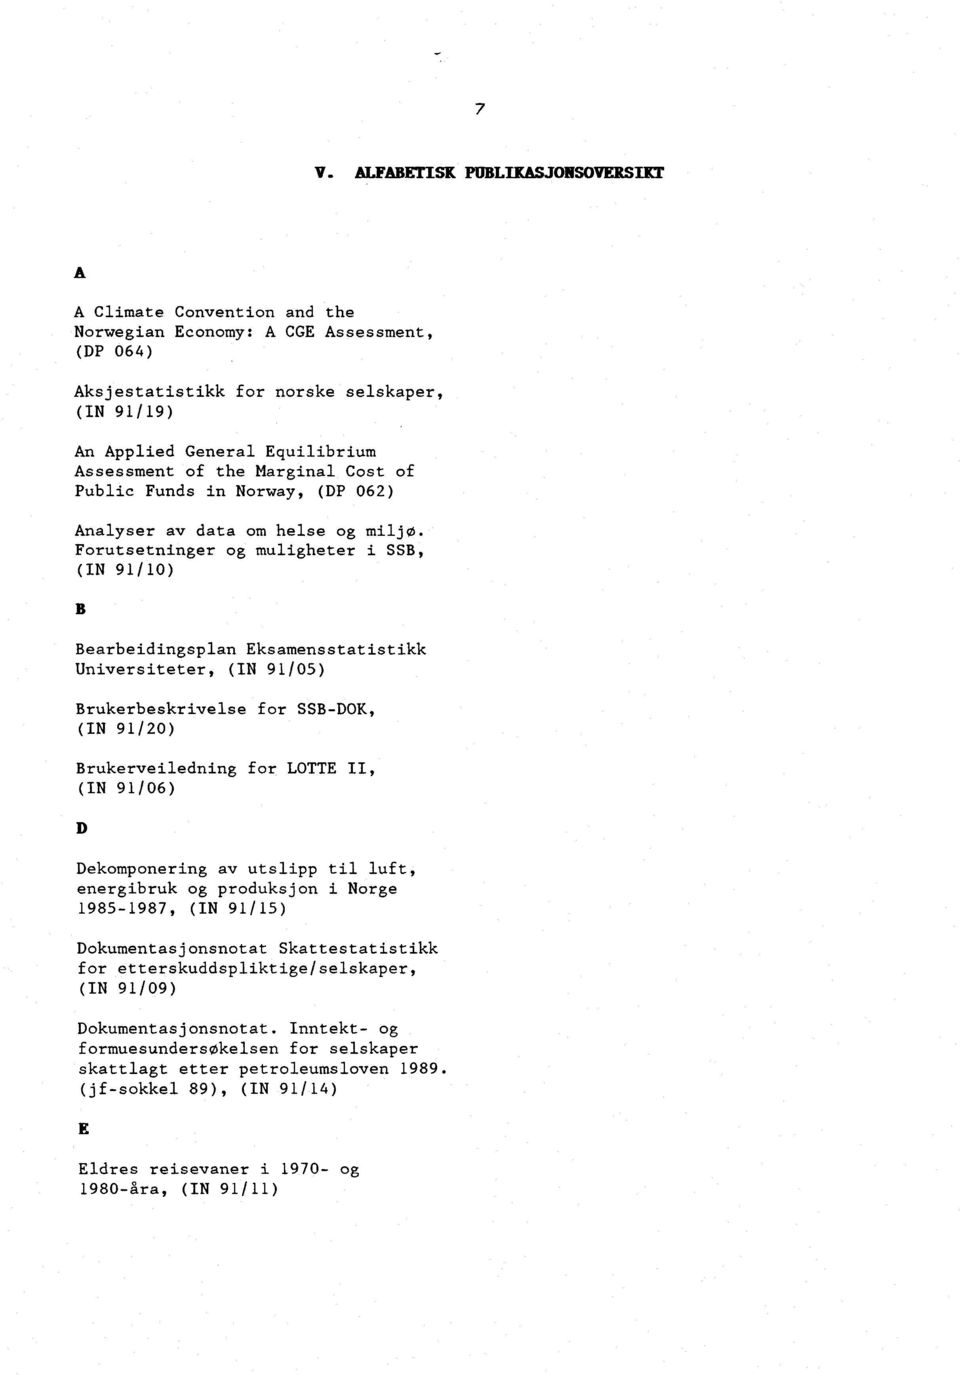 Forutsetninger og muligheter i SSB, (IN 91/10) B Bearbeidingsplan Eksamensstatistikk Universiteter, (IN 91/05) Brukerbeskrivelse for SSB-DOK, (IN 91/20) Brukerveiledning for LOTTE II, (IN 91/06) D